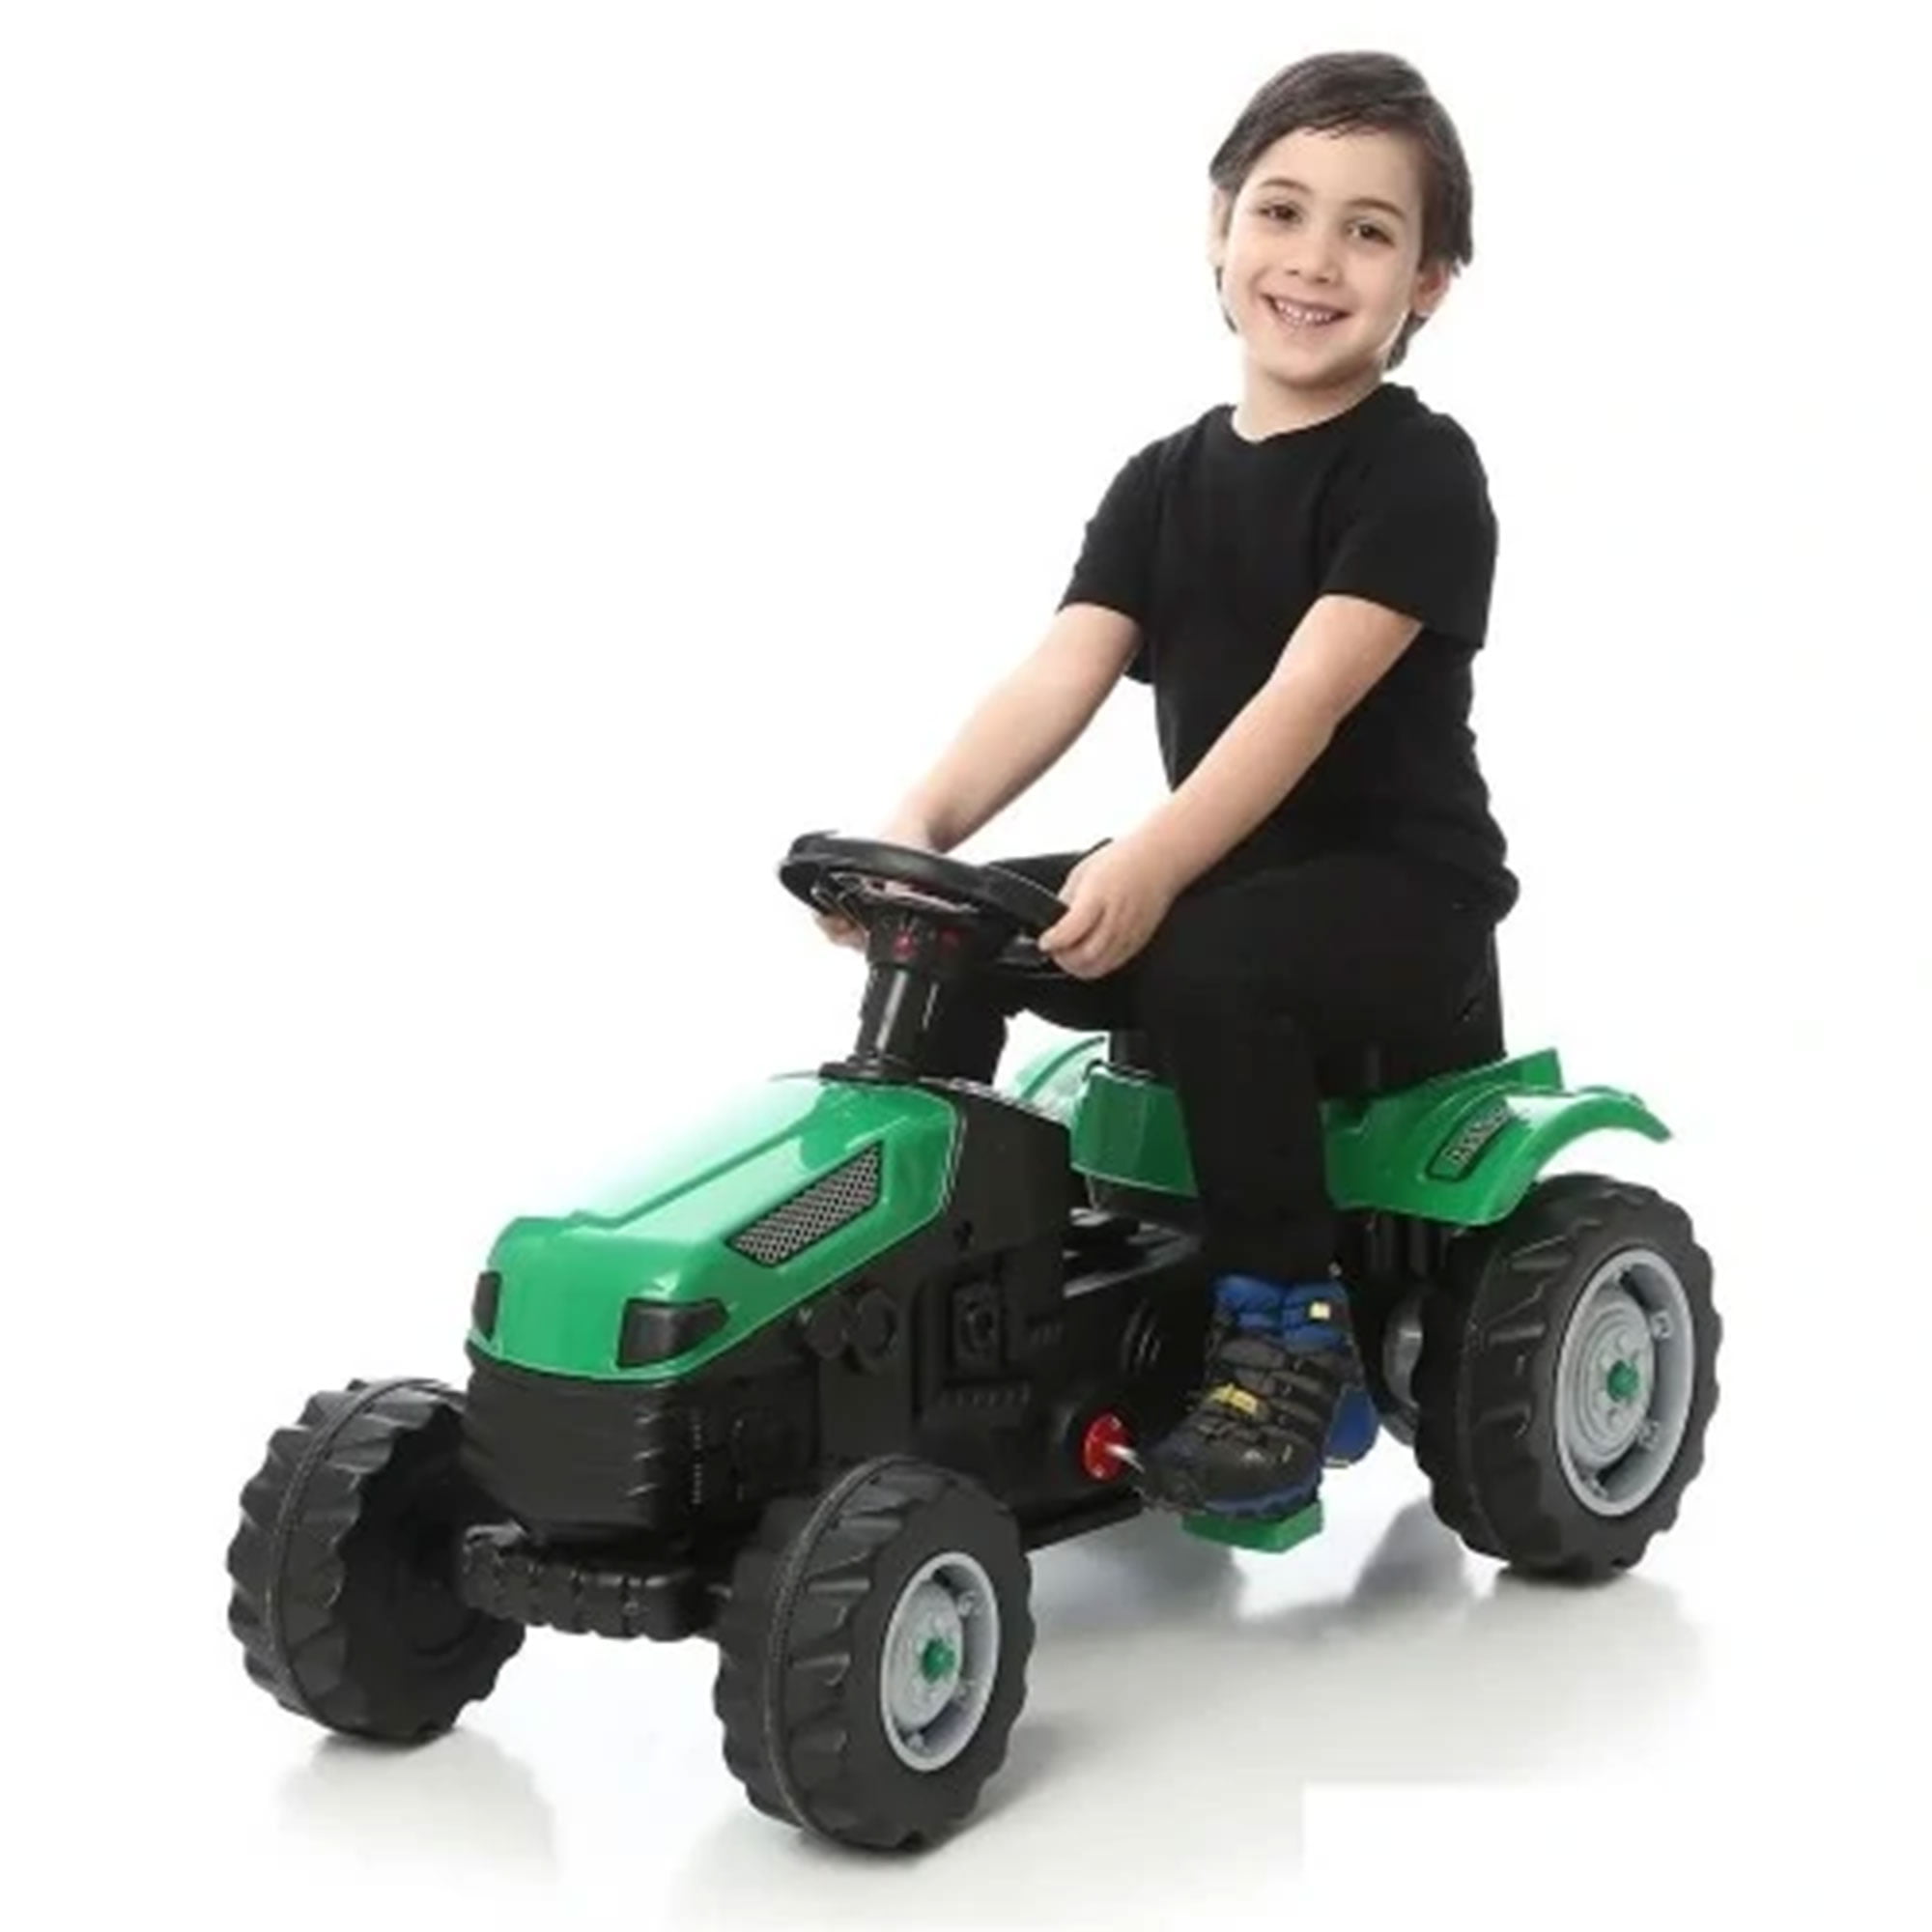 Pilsan children's tractor Super 07294 green with air horn, towbar